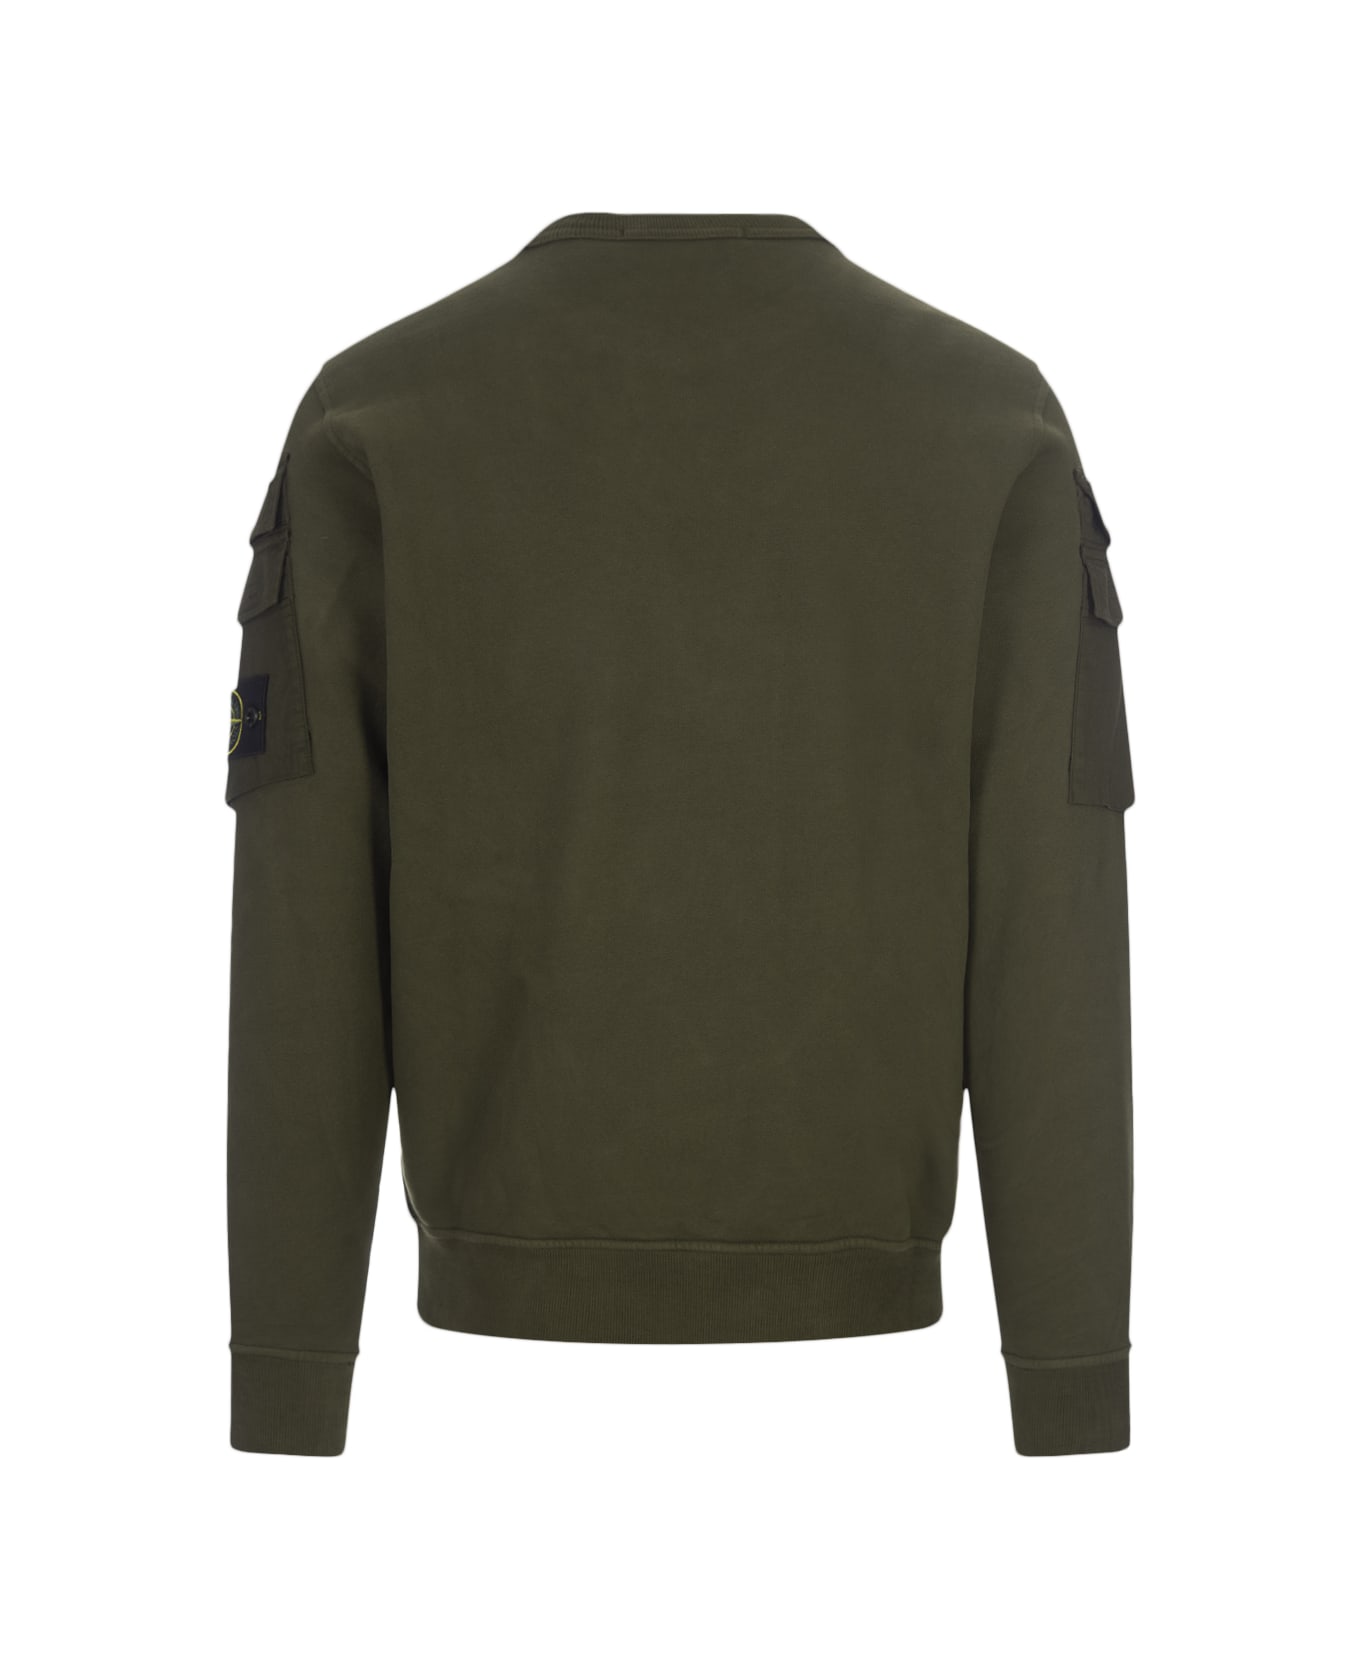 Stone Island Cotton Sweatshirt - Verde フリース